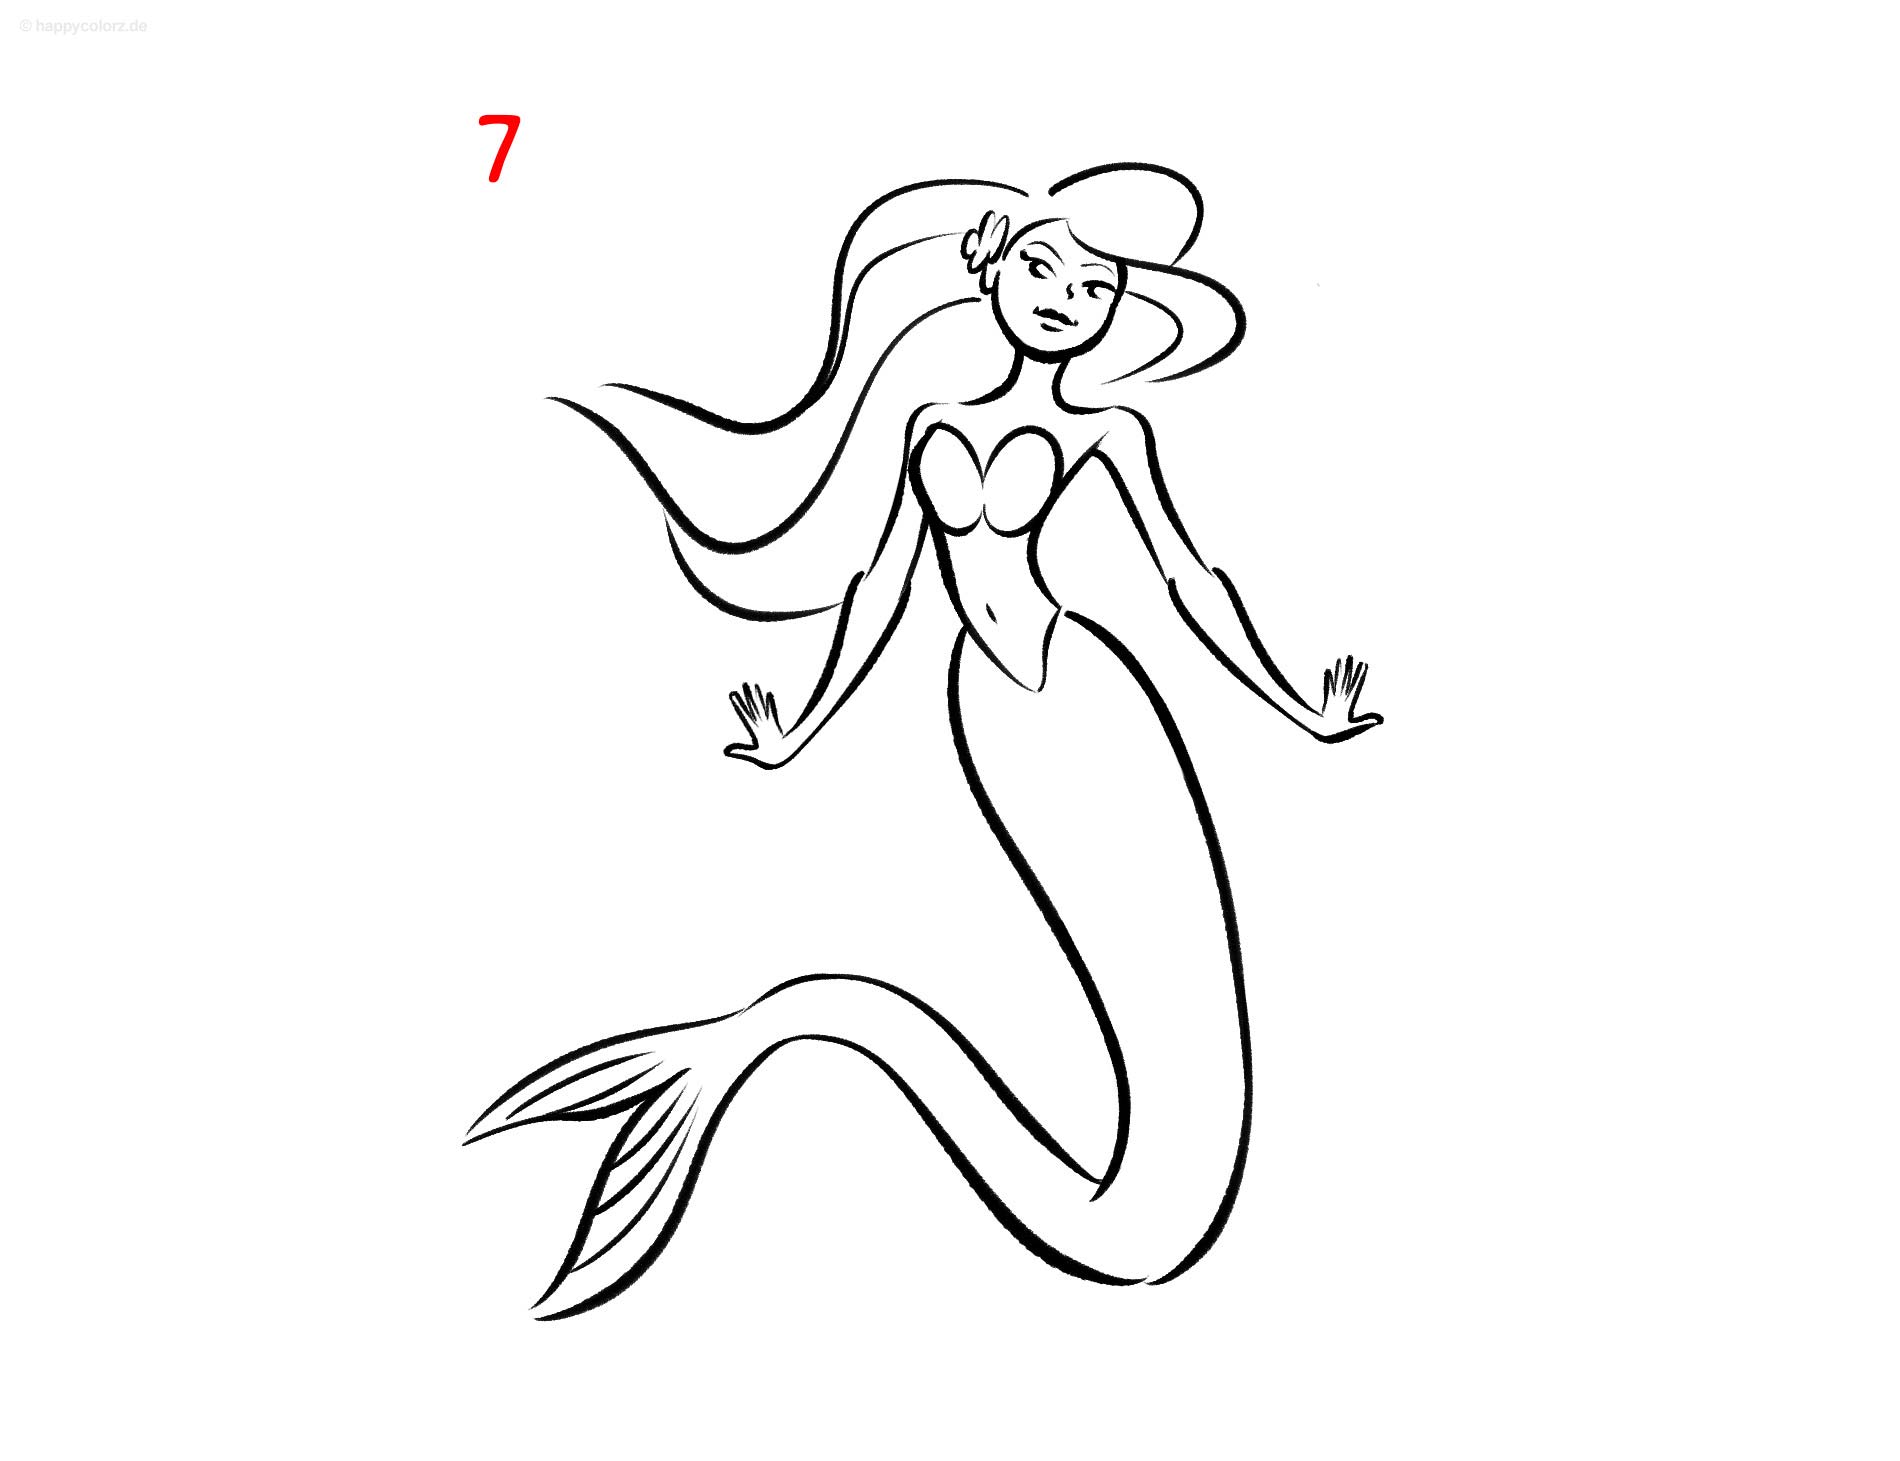 Meerjungfrau malen - Schritt für Schritt